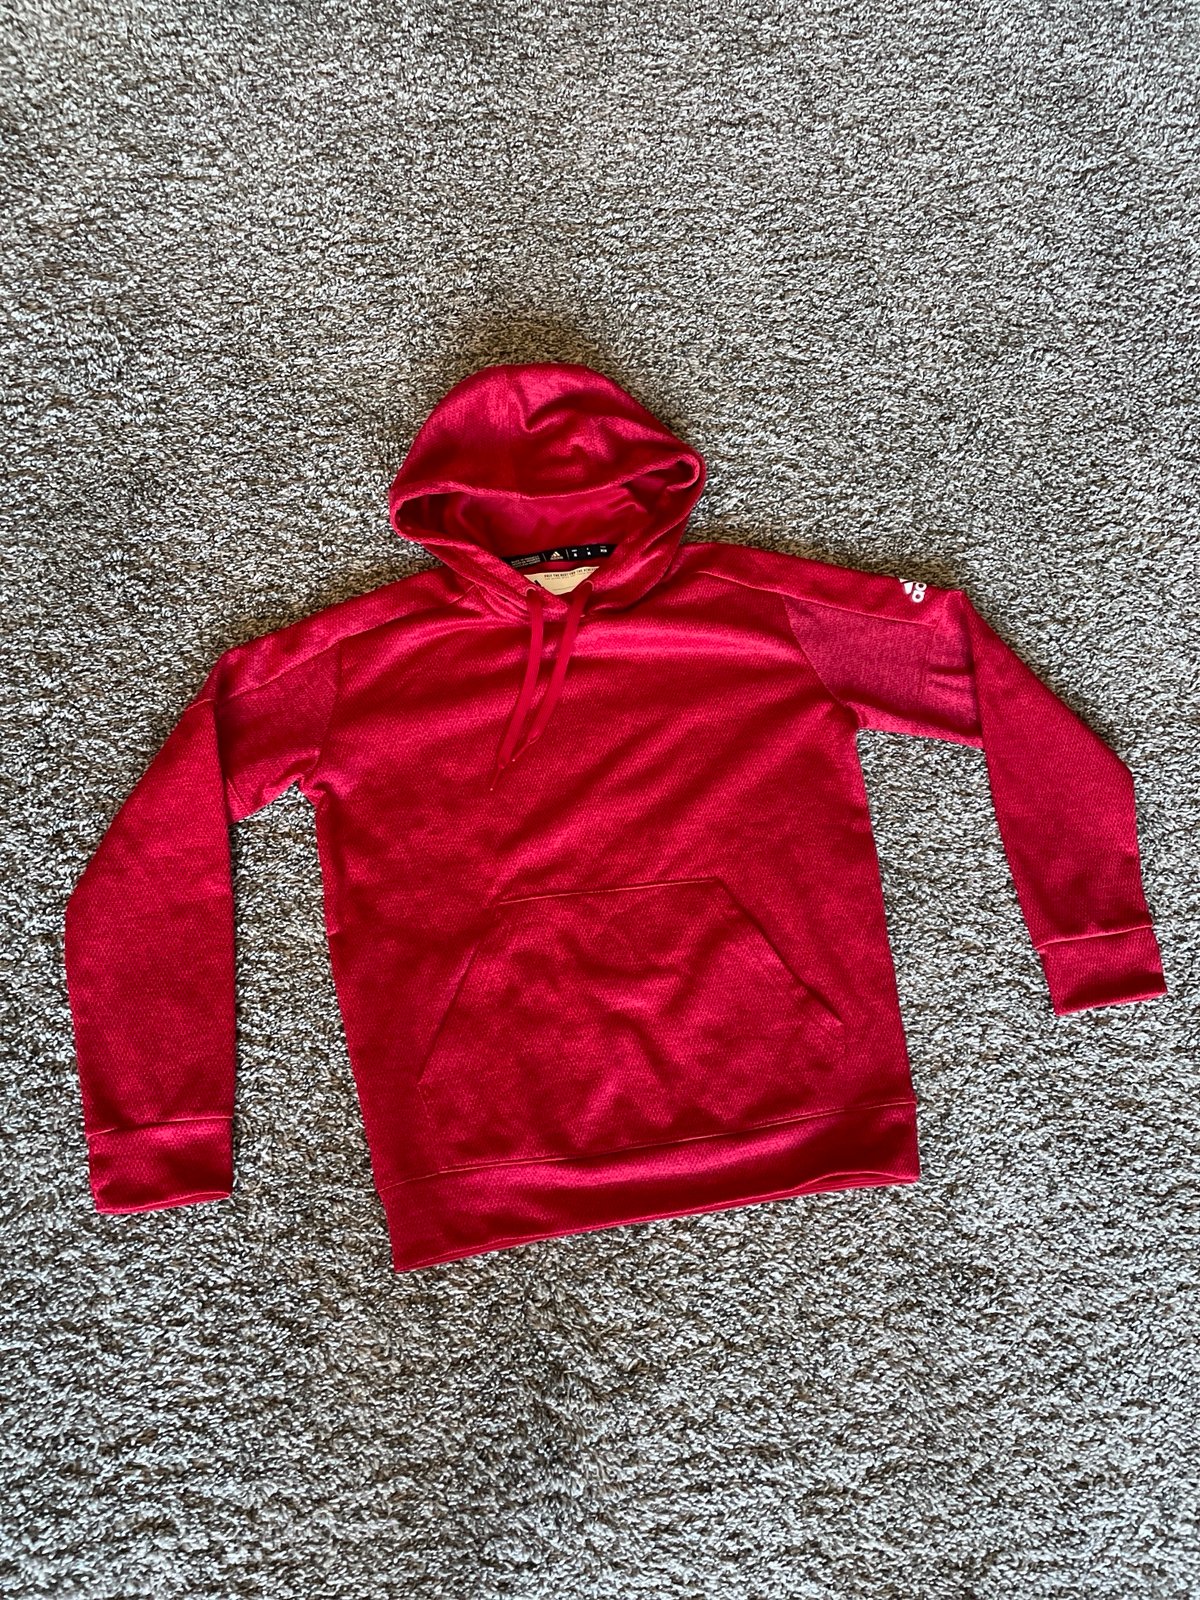 Wholesale price Adidas red hoodie PRtafCMMR Great